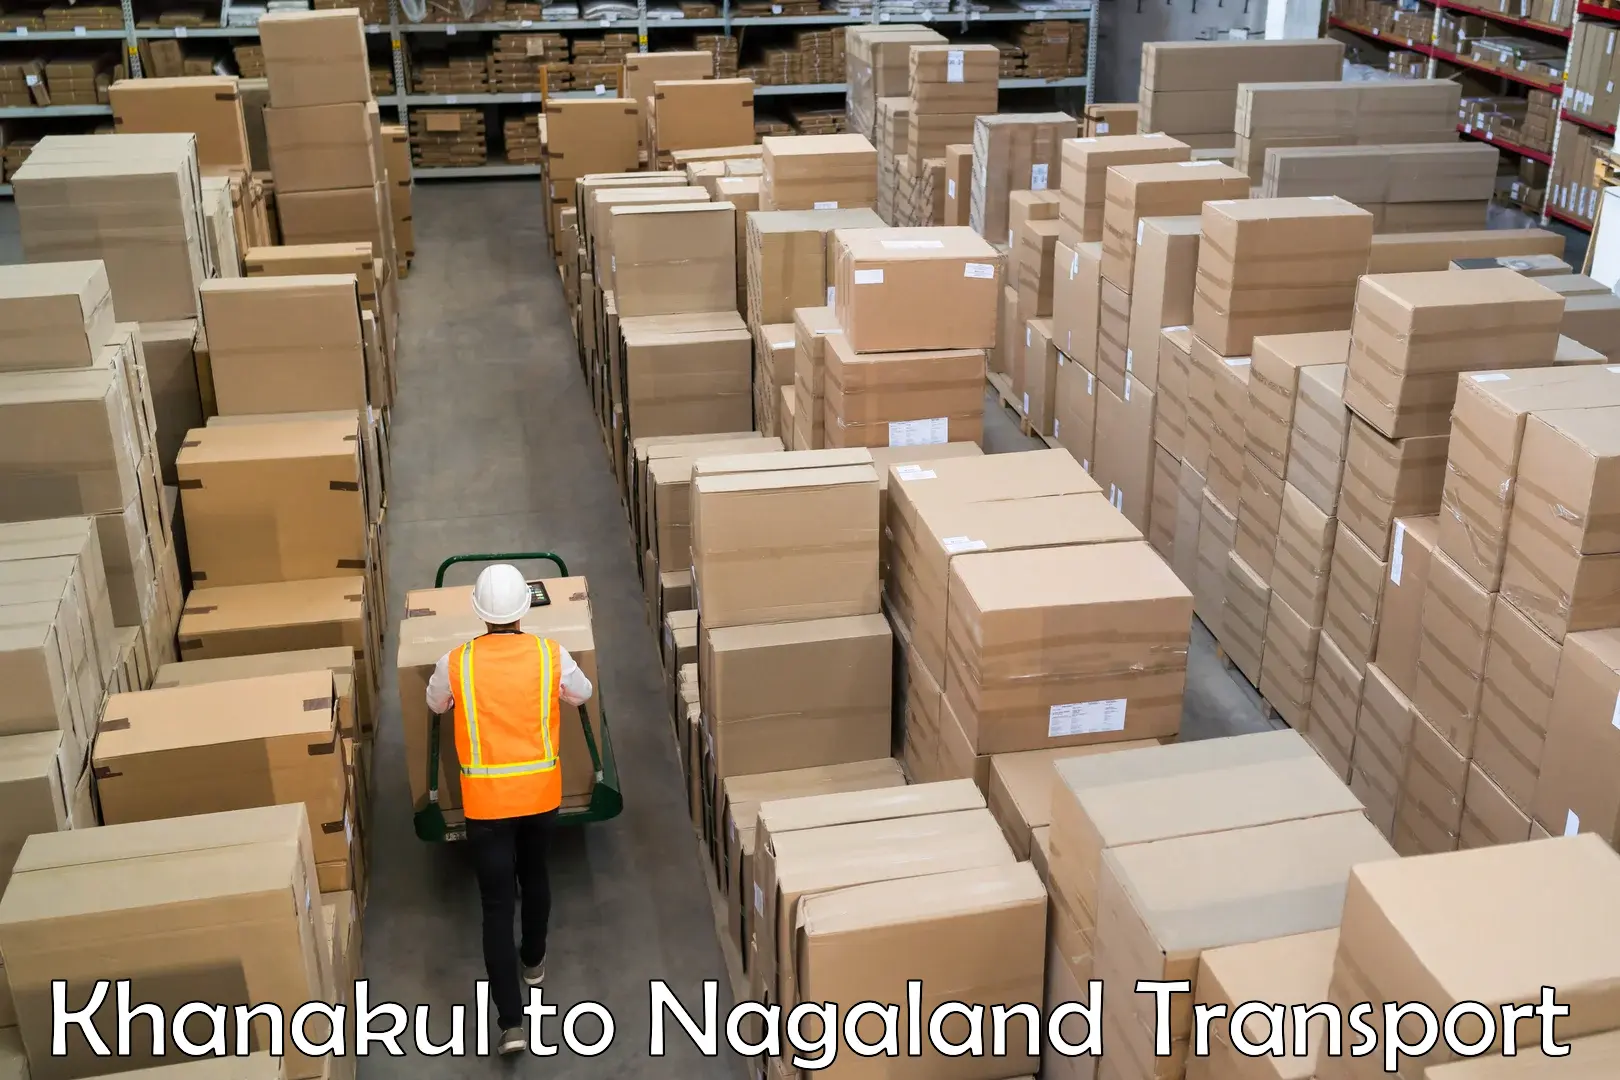 Shipping services Khanakul to NIT Nagaland